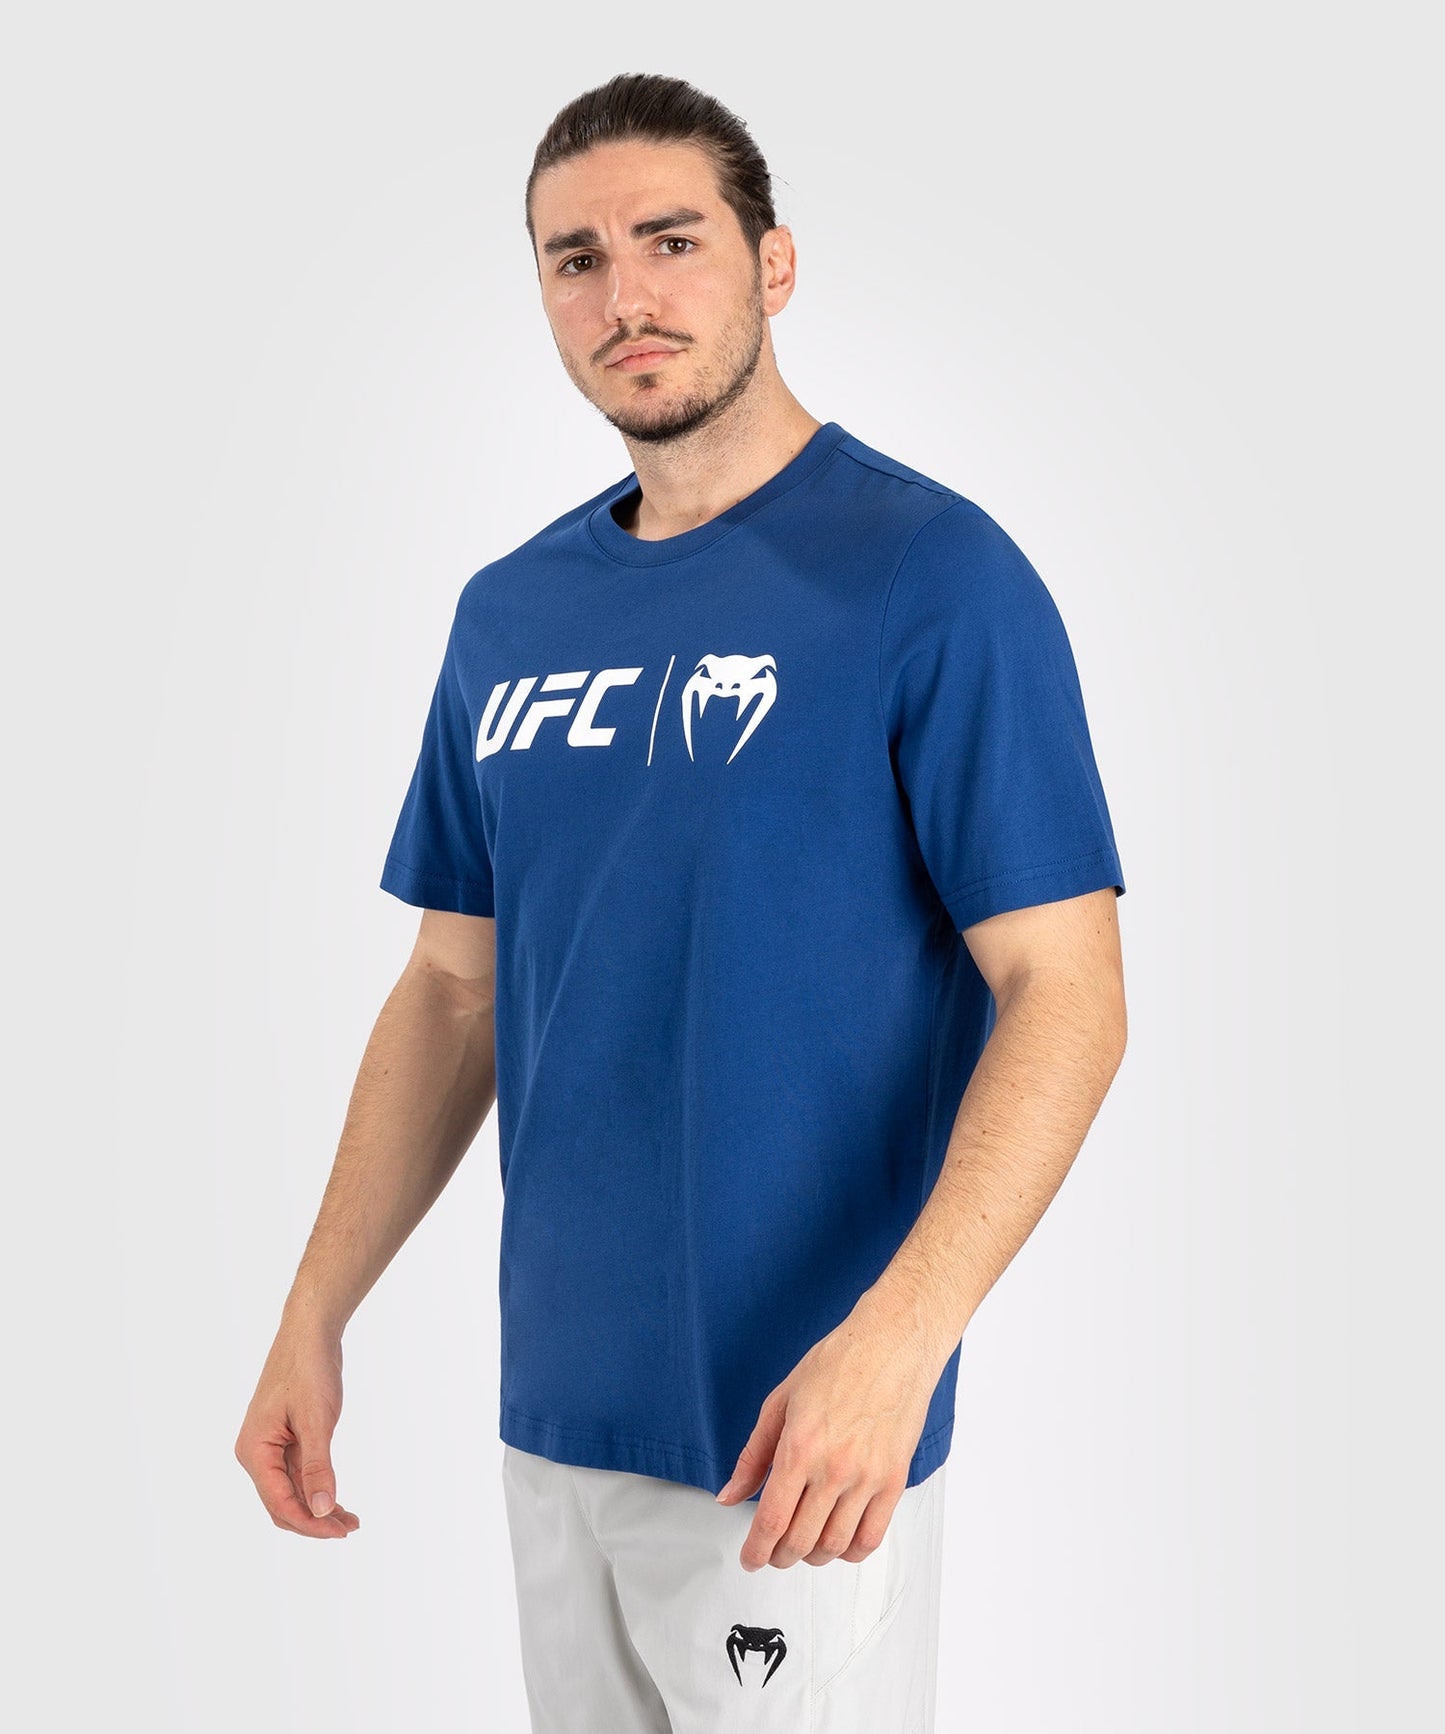 UFC Venum Classic  Camiseta - Azul Marino/Blanco